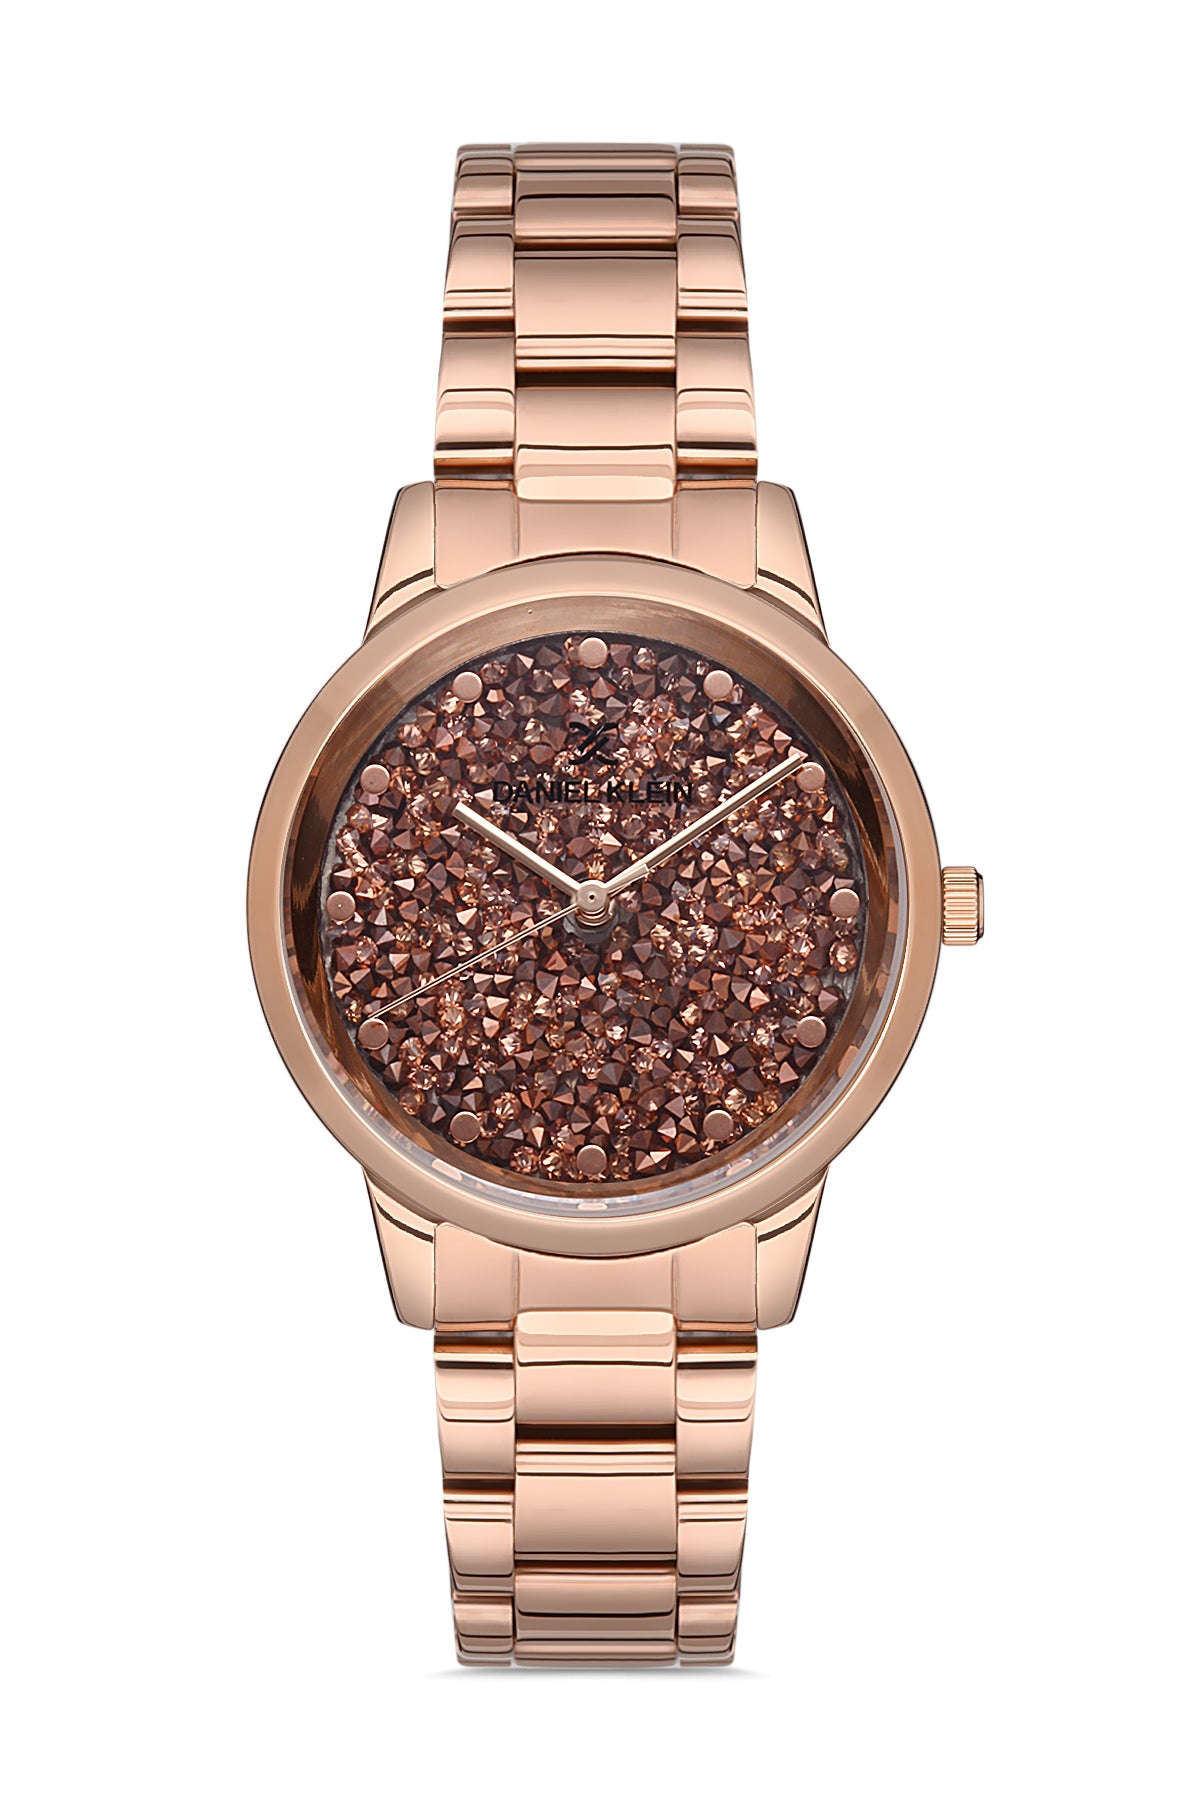 Rolex Stone Watch First Copy - Ashoka Watch Company